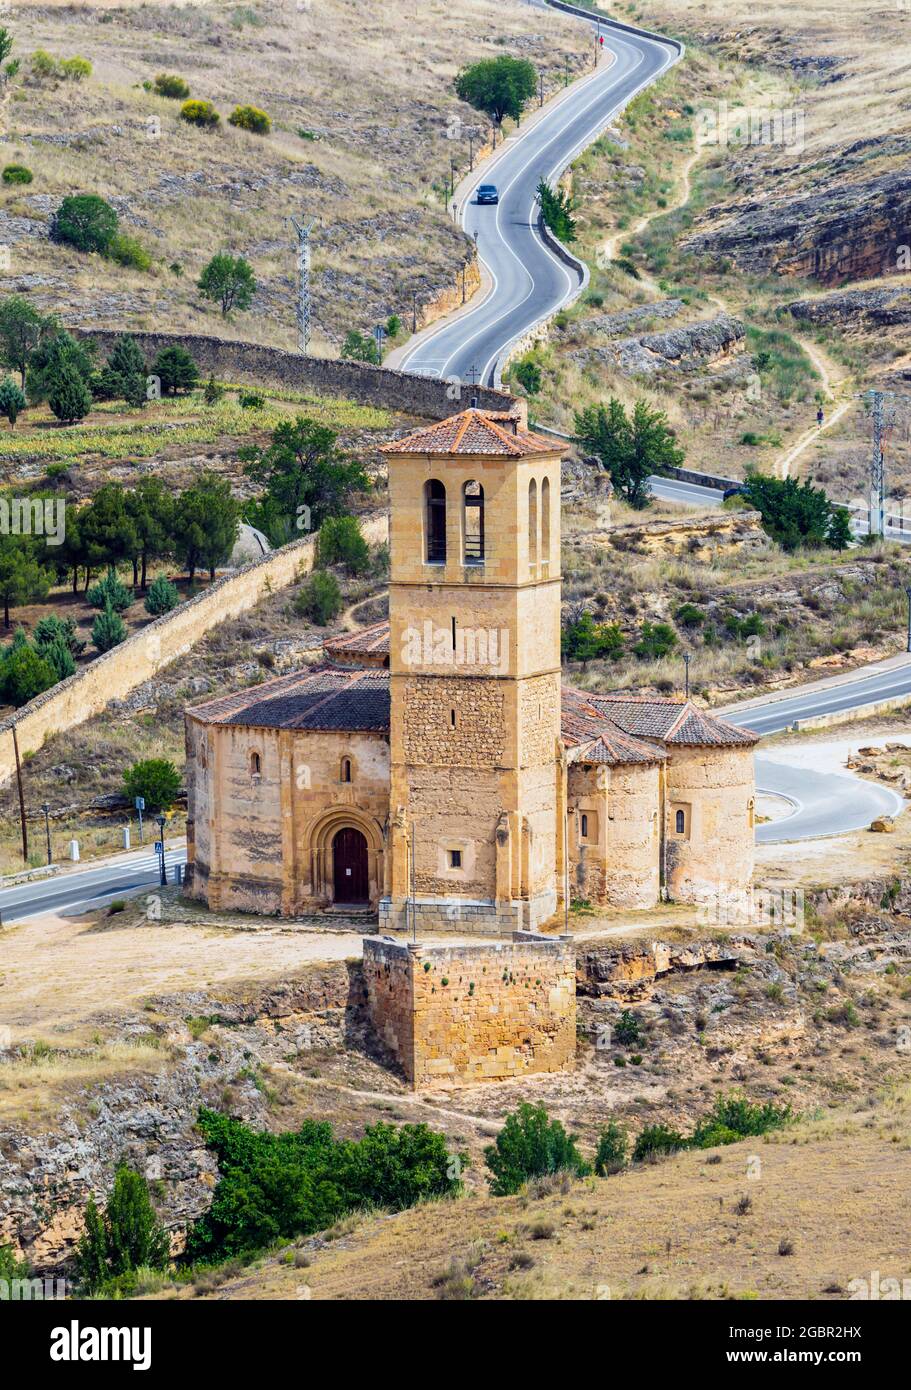 Iglesia de la Vera Cruz, or Church of the True Cross, Segovia, Segovia Province, Castile and Leon, Spain.  The church dates from the 13th century and Stock Photo